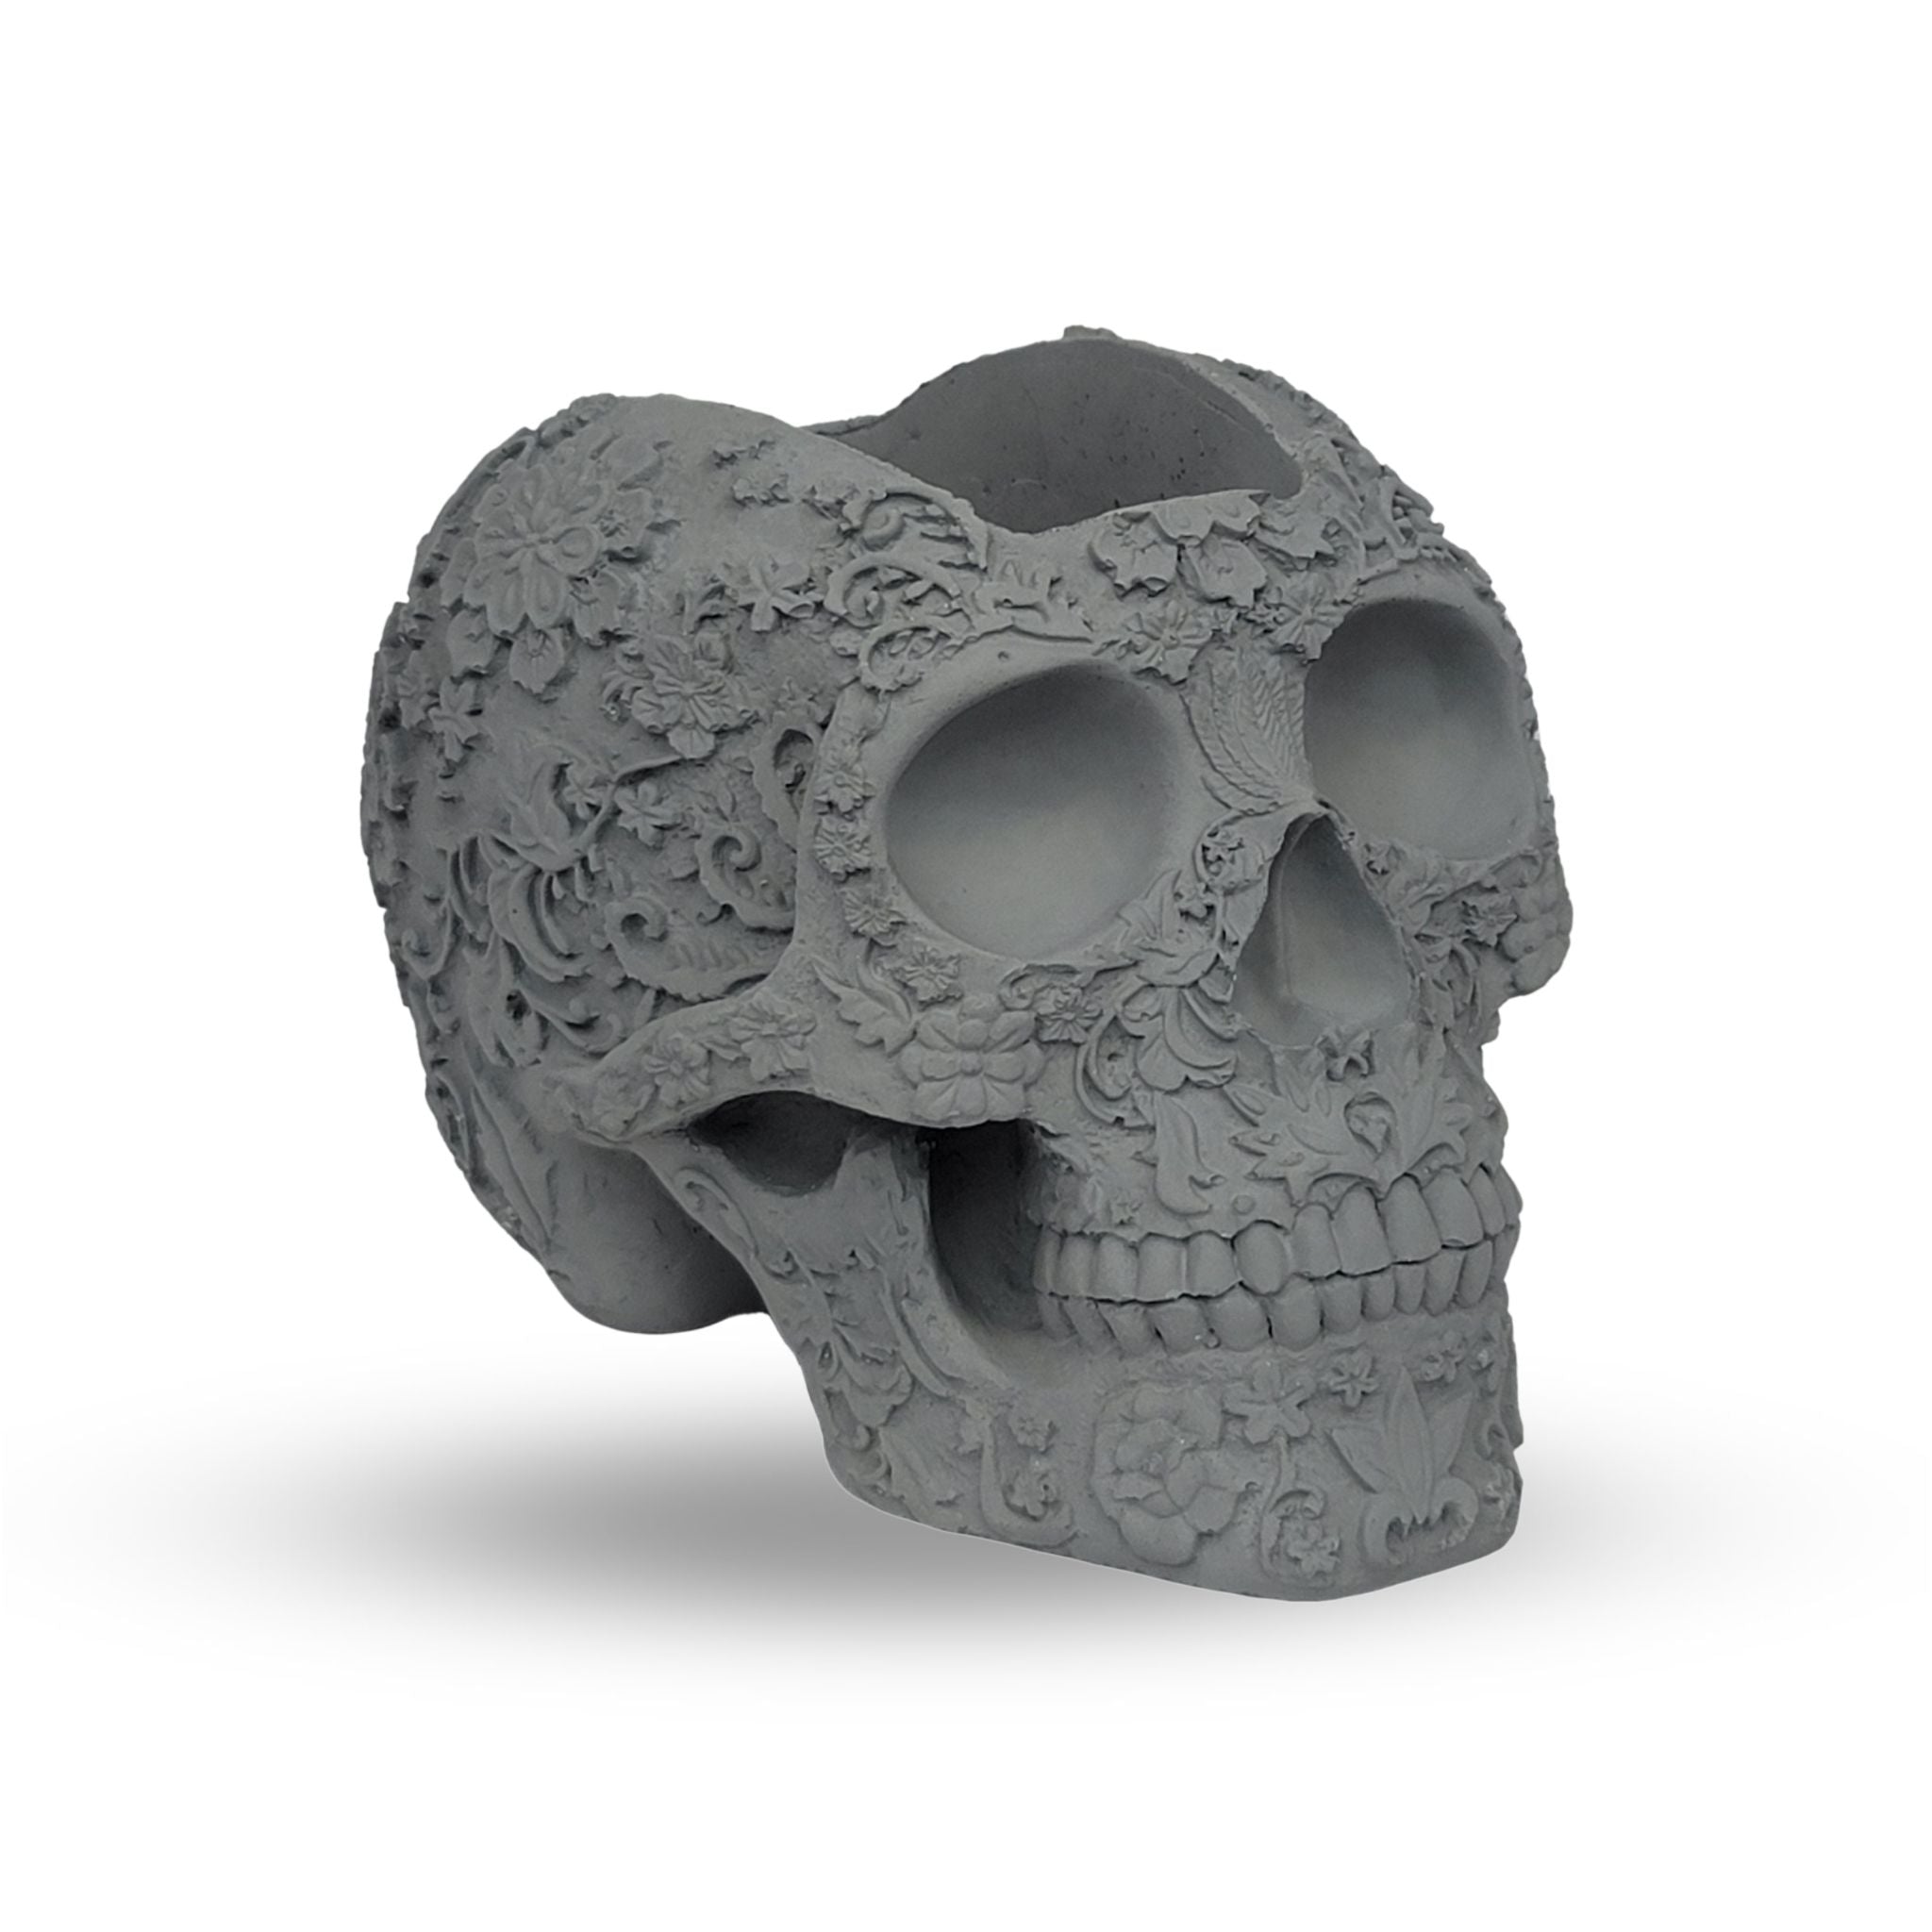 Mohawk Skull Planter - Gray